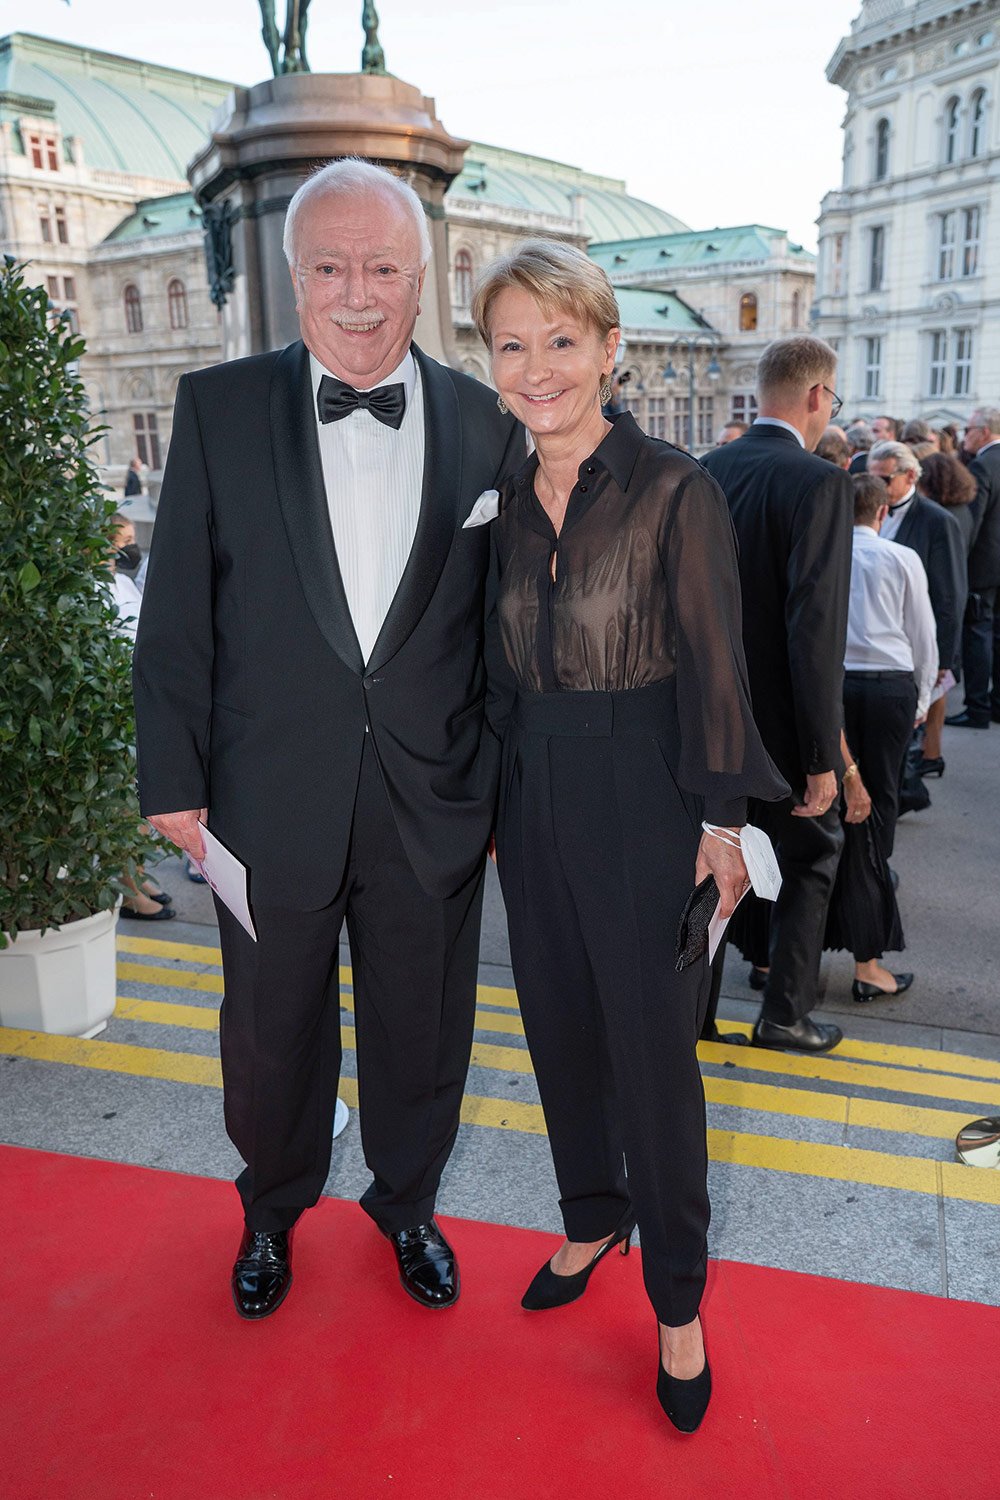 Michael Häupl und Barbara Hörnlein feierten den Geburtstag des ehemaligen Wiener Bürgermeisters in der Albertina.